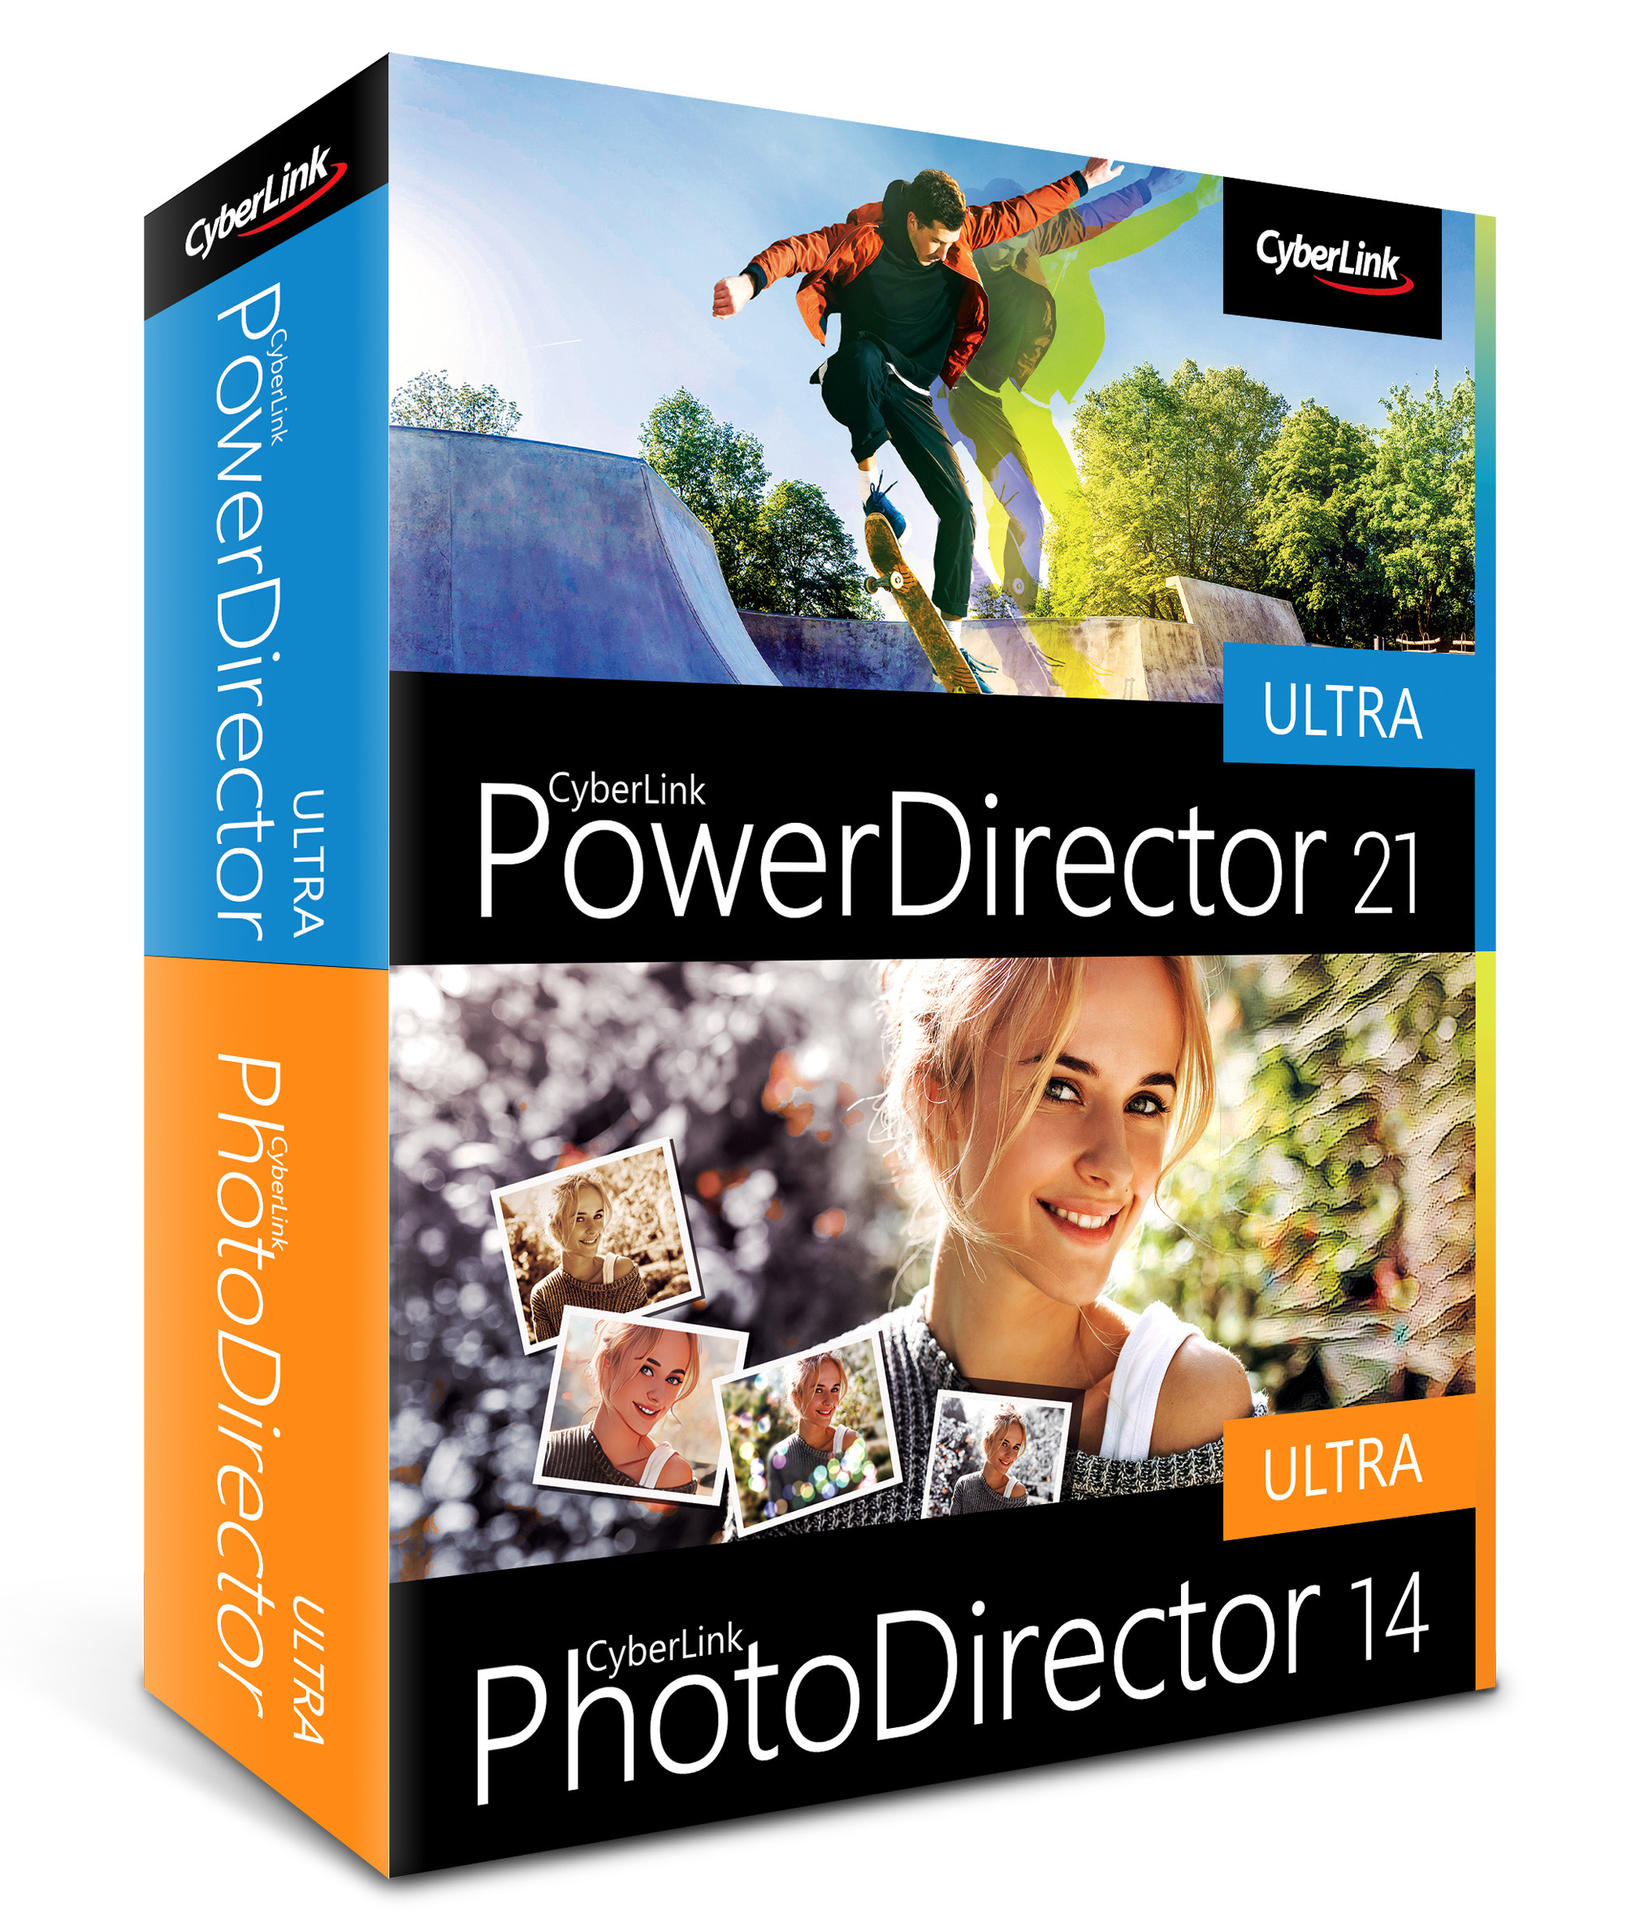 21 PhotoDirector Ultra CyberLink & PowerDirector - Ultra 14 [PC]